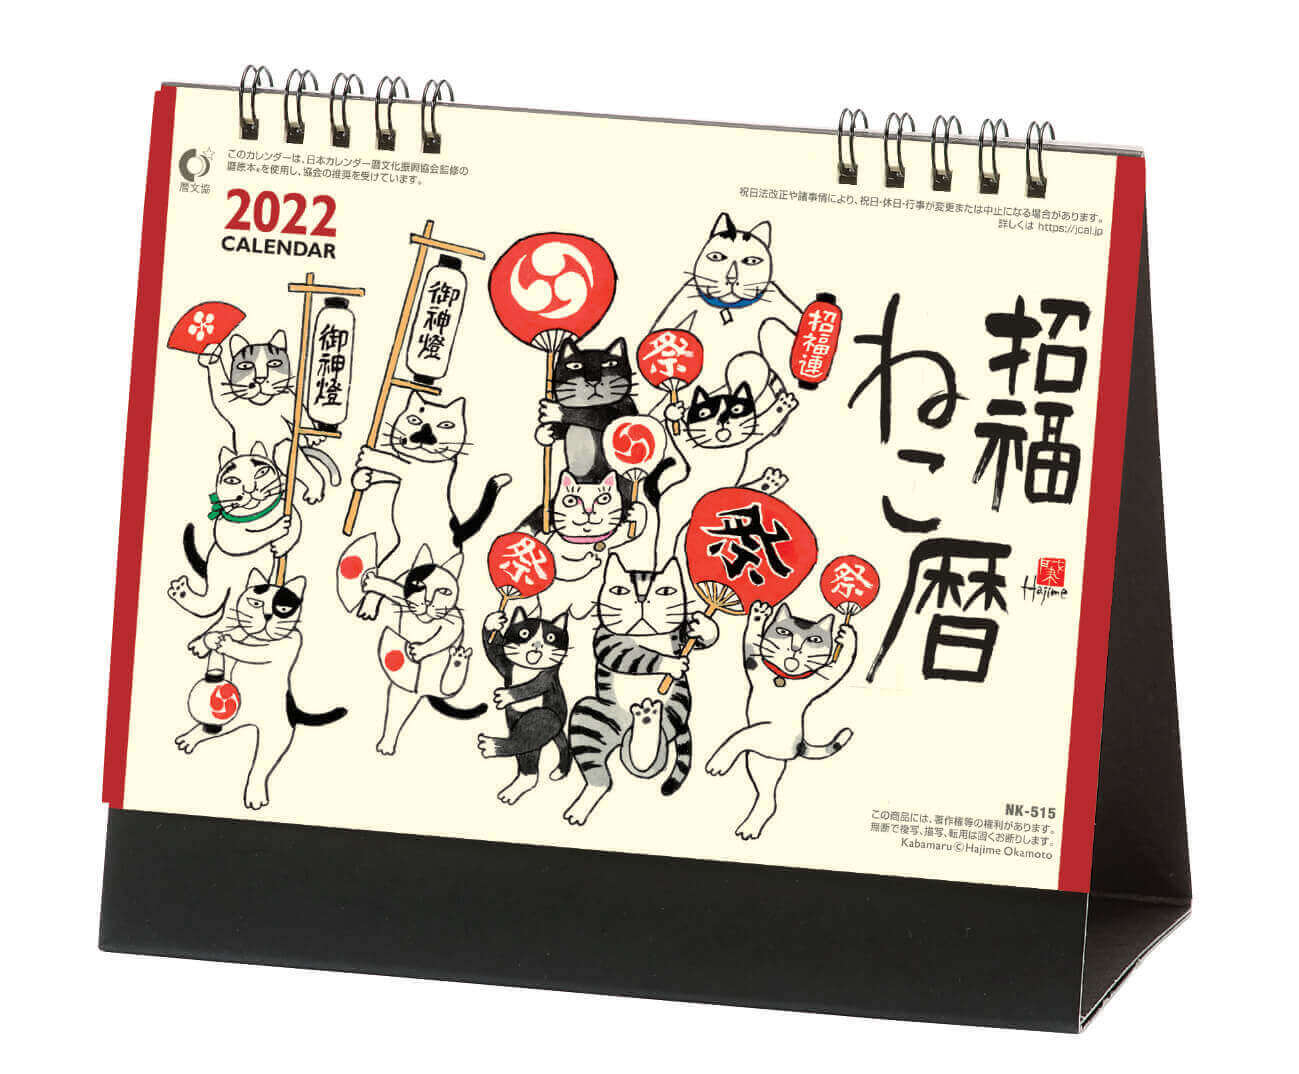  卓上・招福ねこ暦 -岡本肇- 2022年カレンダーの画像